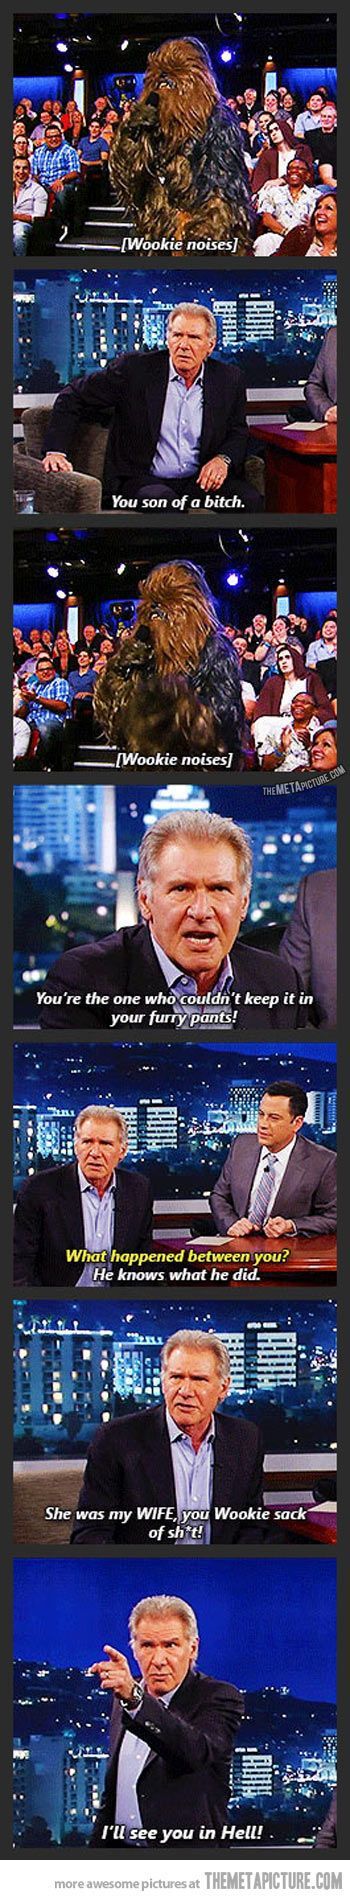 Chewbacca vs. Harrison Ford